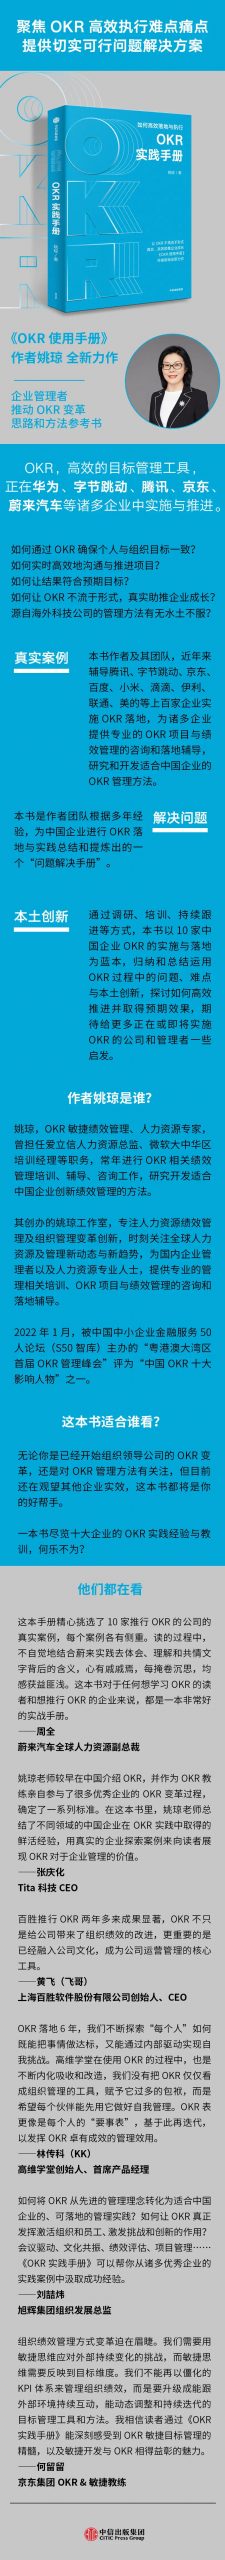 中国OKR第一人姚琼老师最新力作：《OKR实践手册》